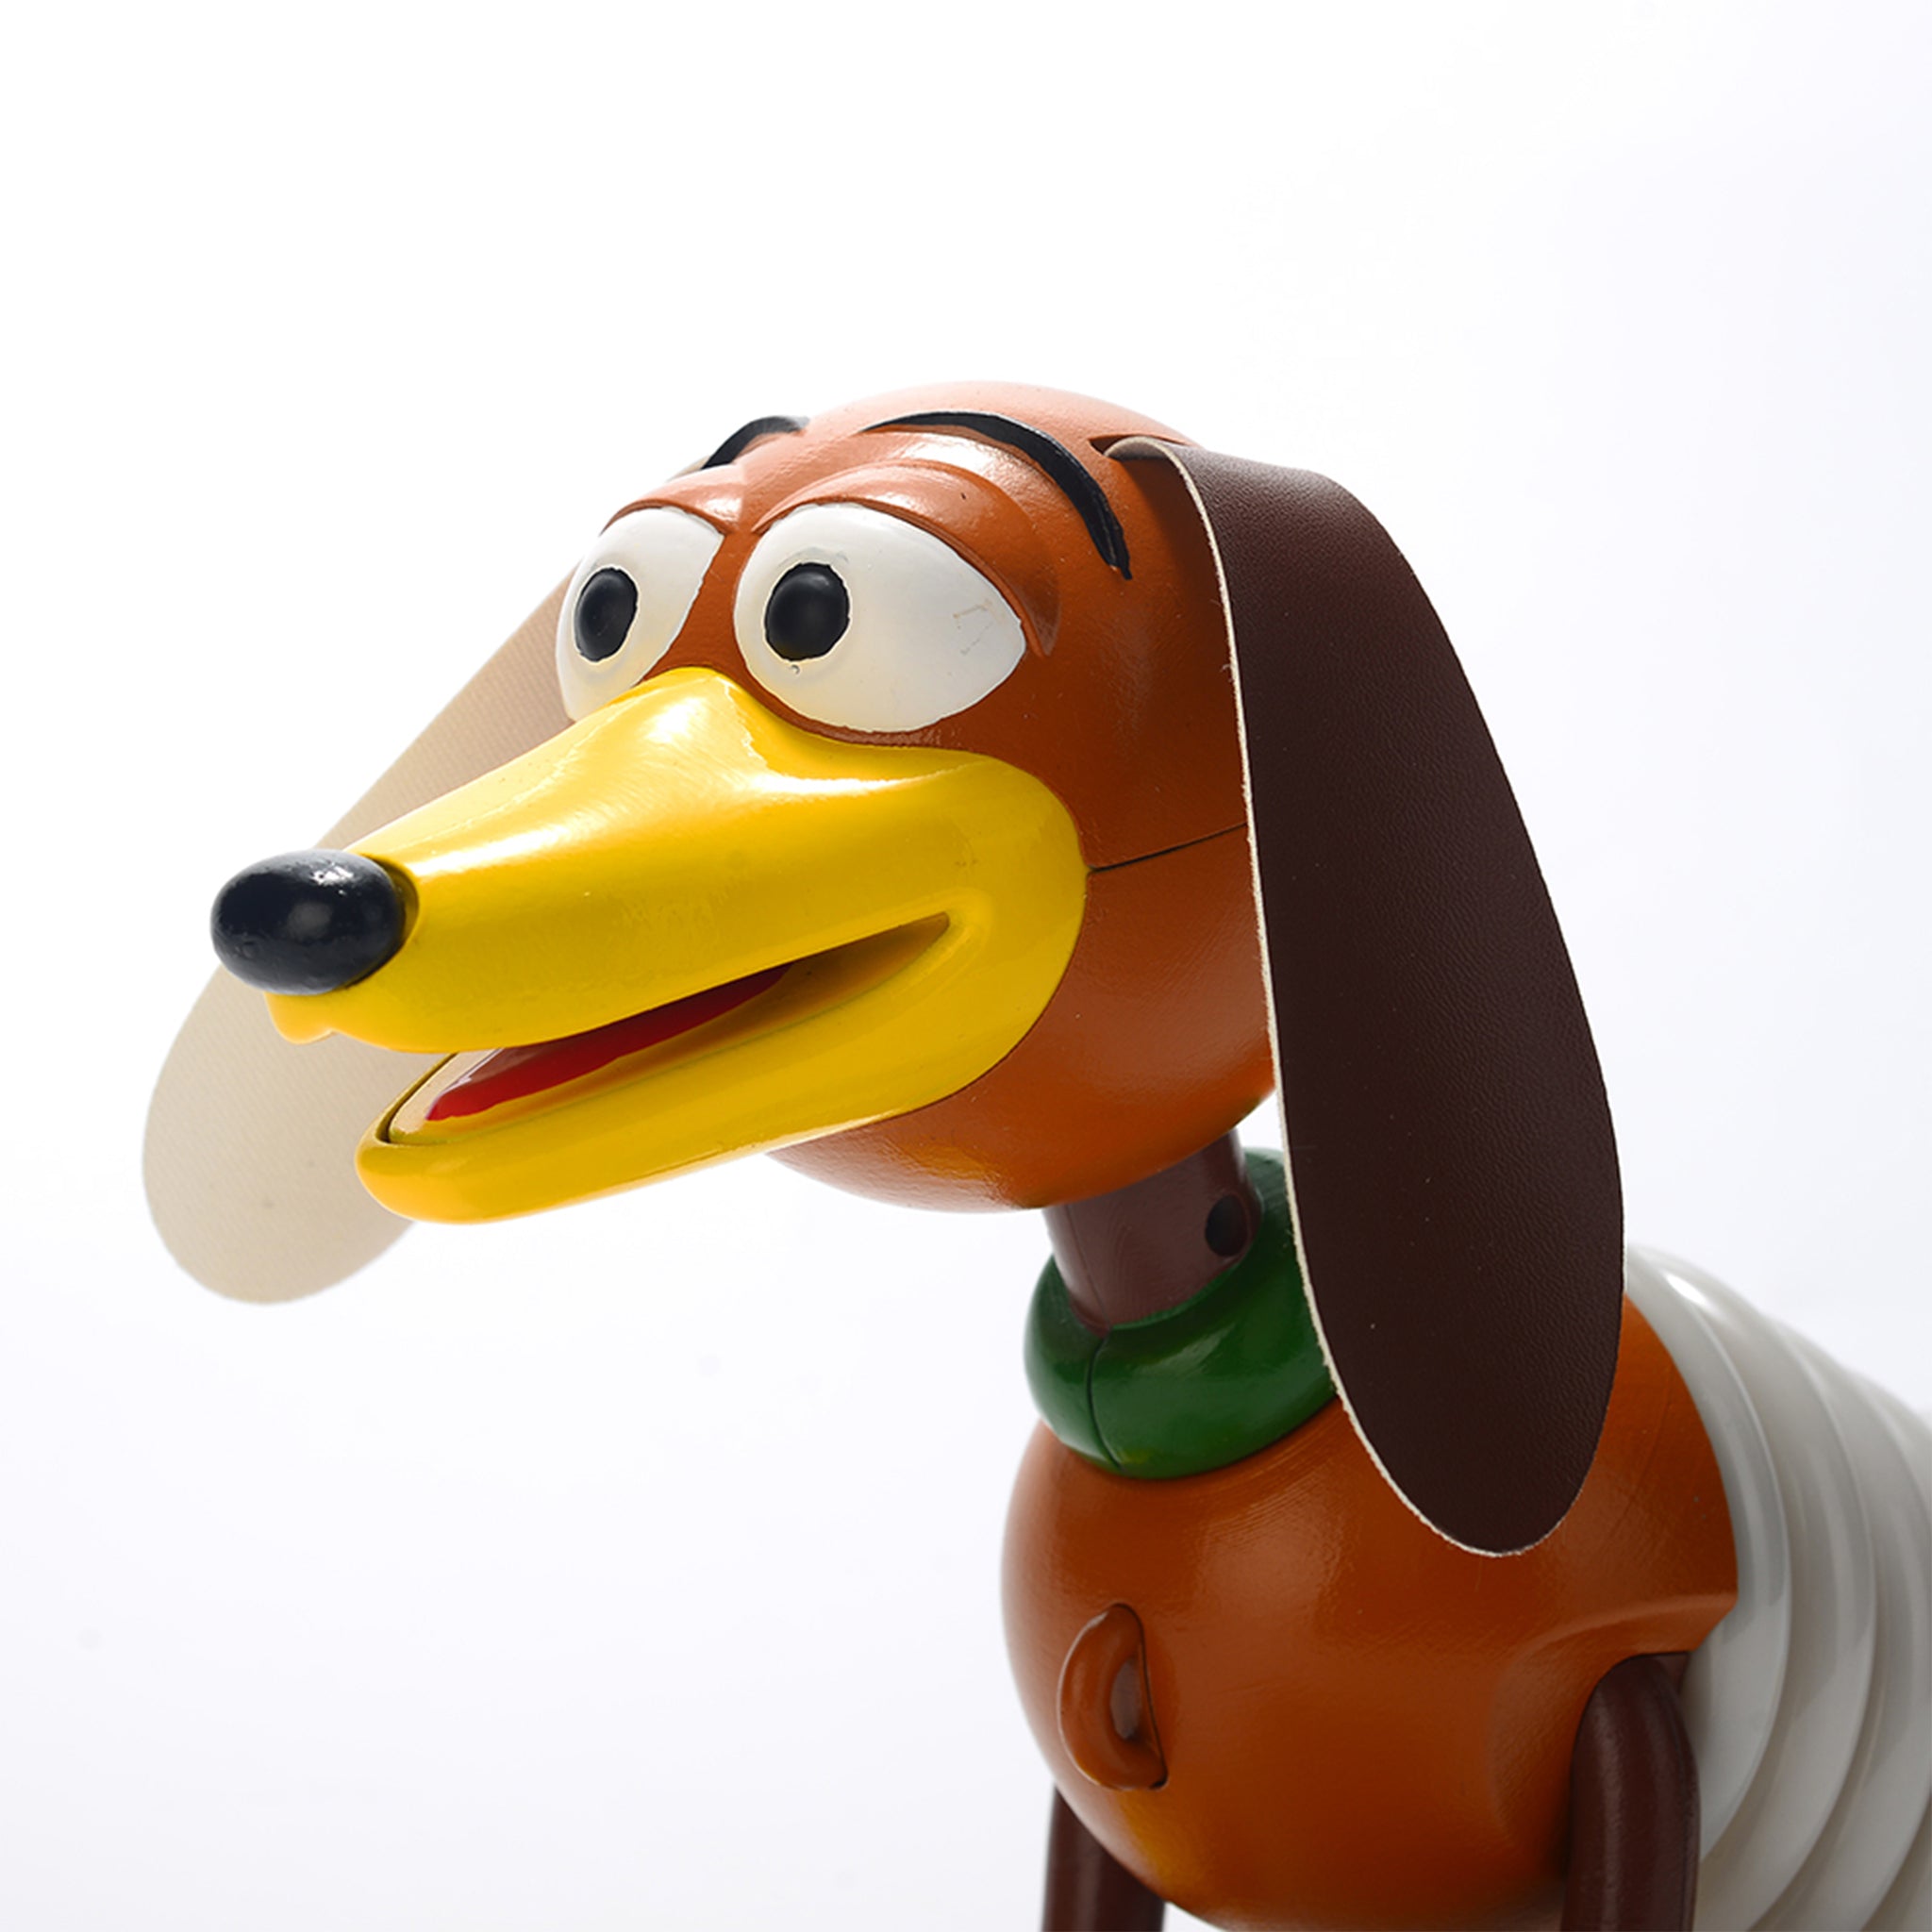 Disney Light-Up Toy - Toy Story - Slinky Dog